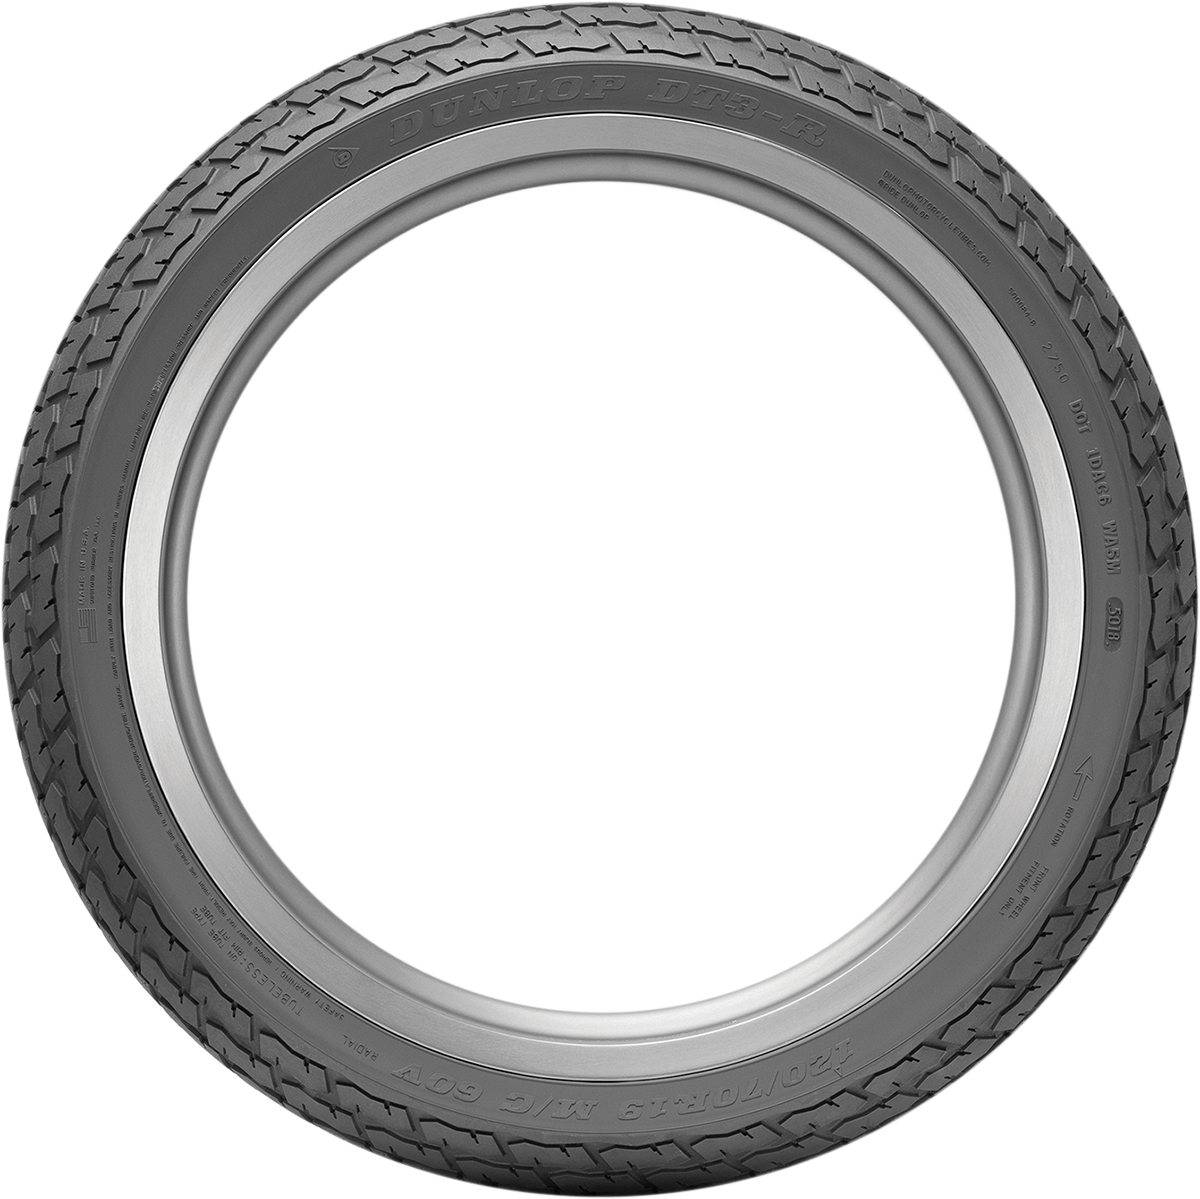 DUNLOP Tire - DT3 - Front - 120/70R19 - 60V 45041332